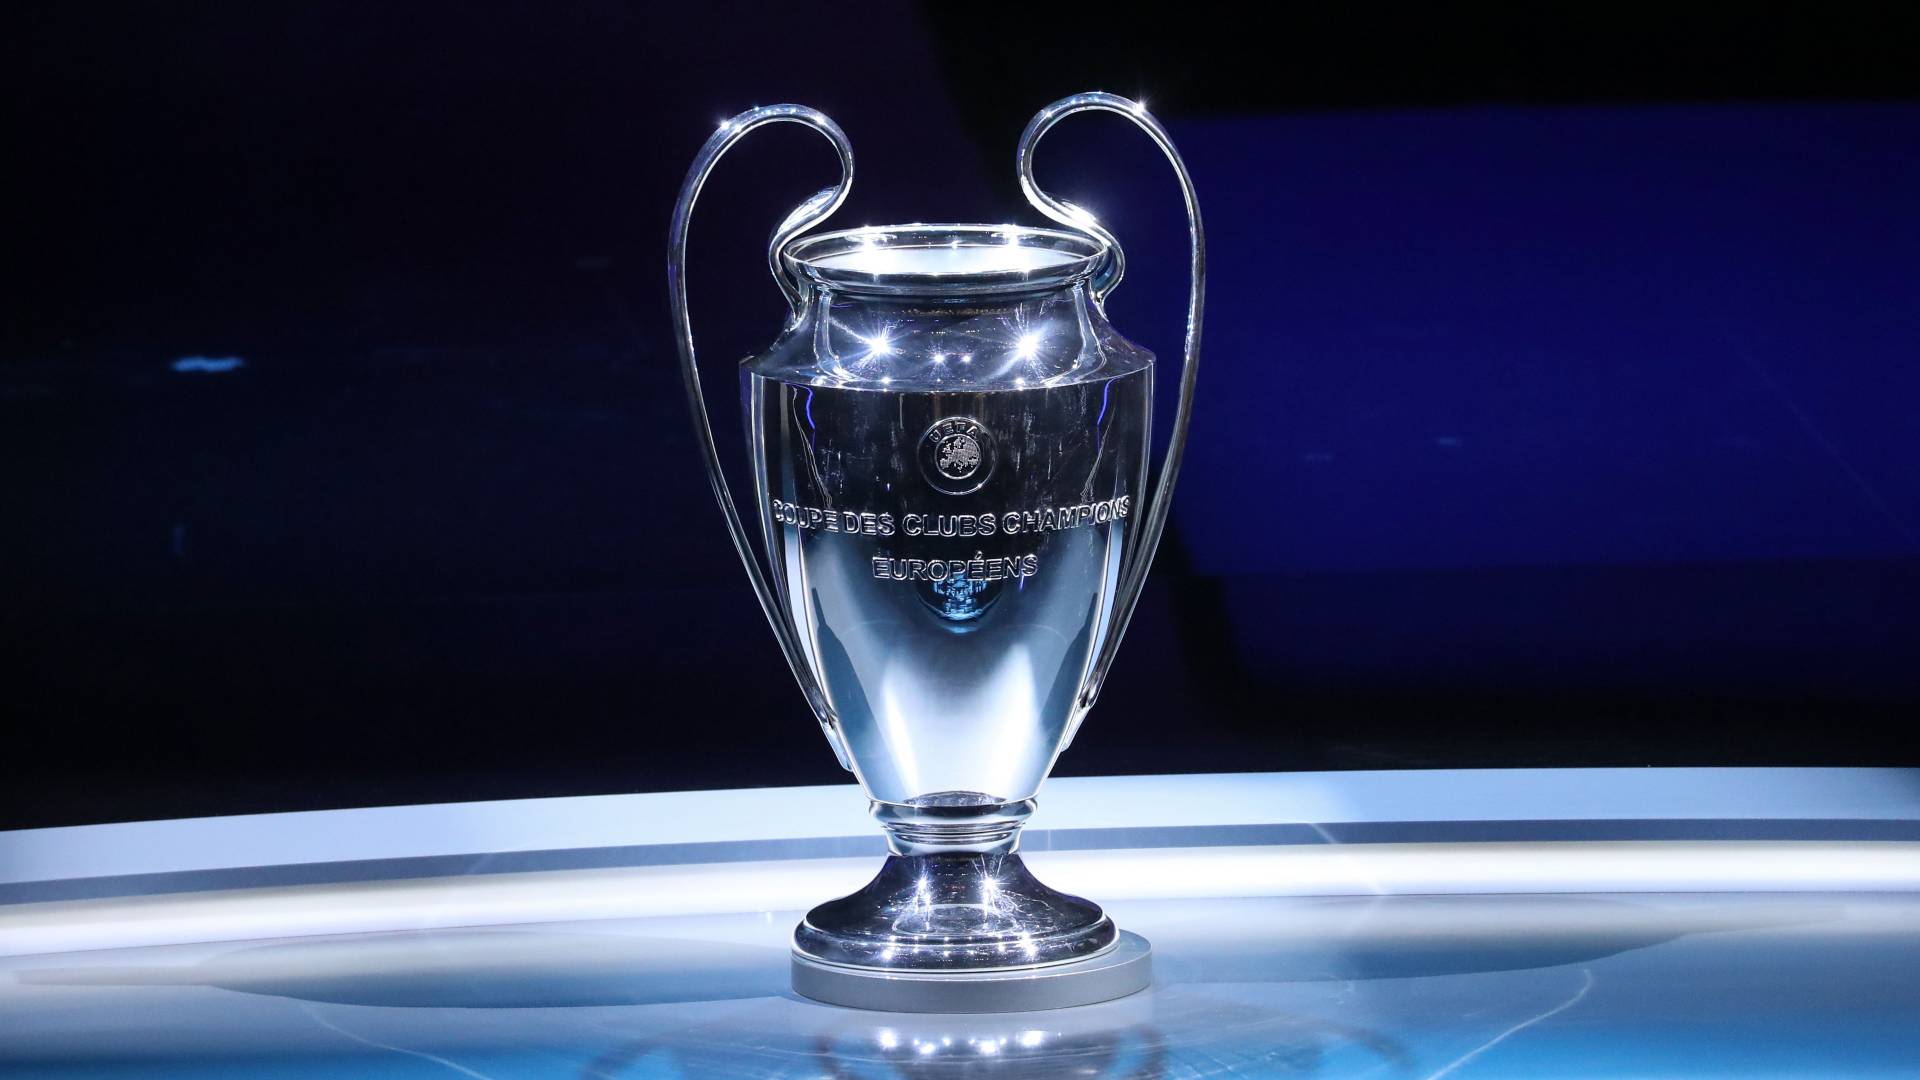 HBO Max anuncia pré-jogo de 30 horas para a final da UEFA Champions League